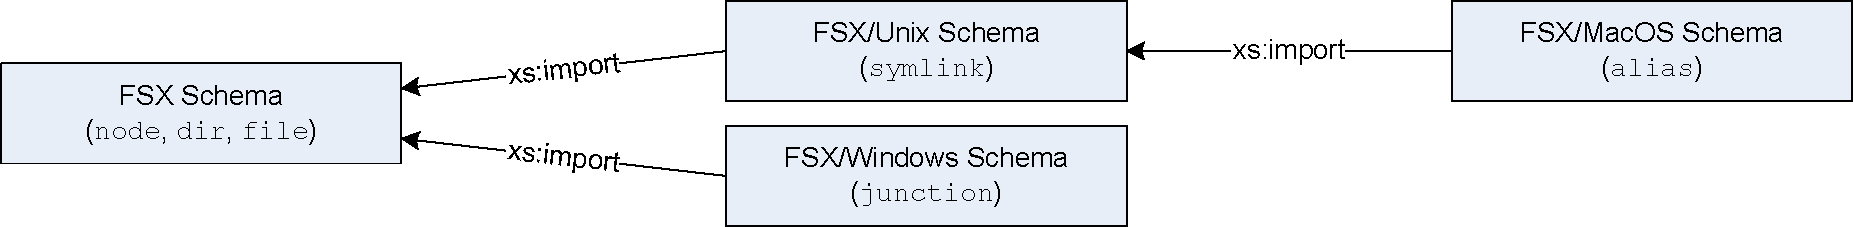 Import Structure of FSX Schemas